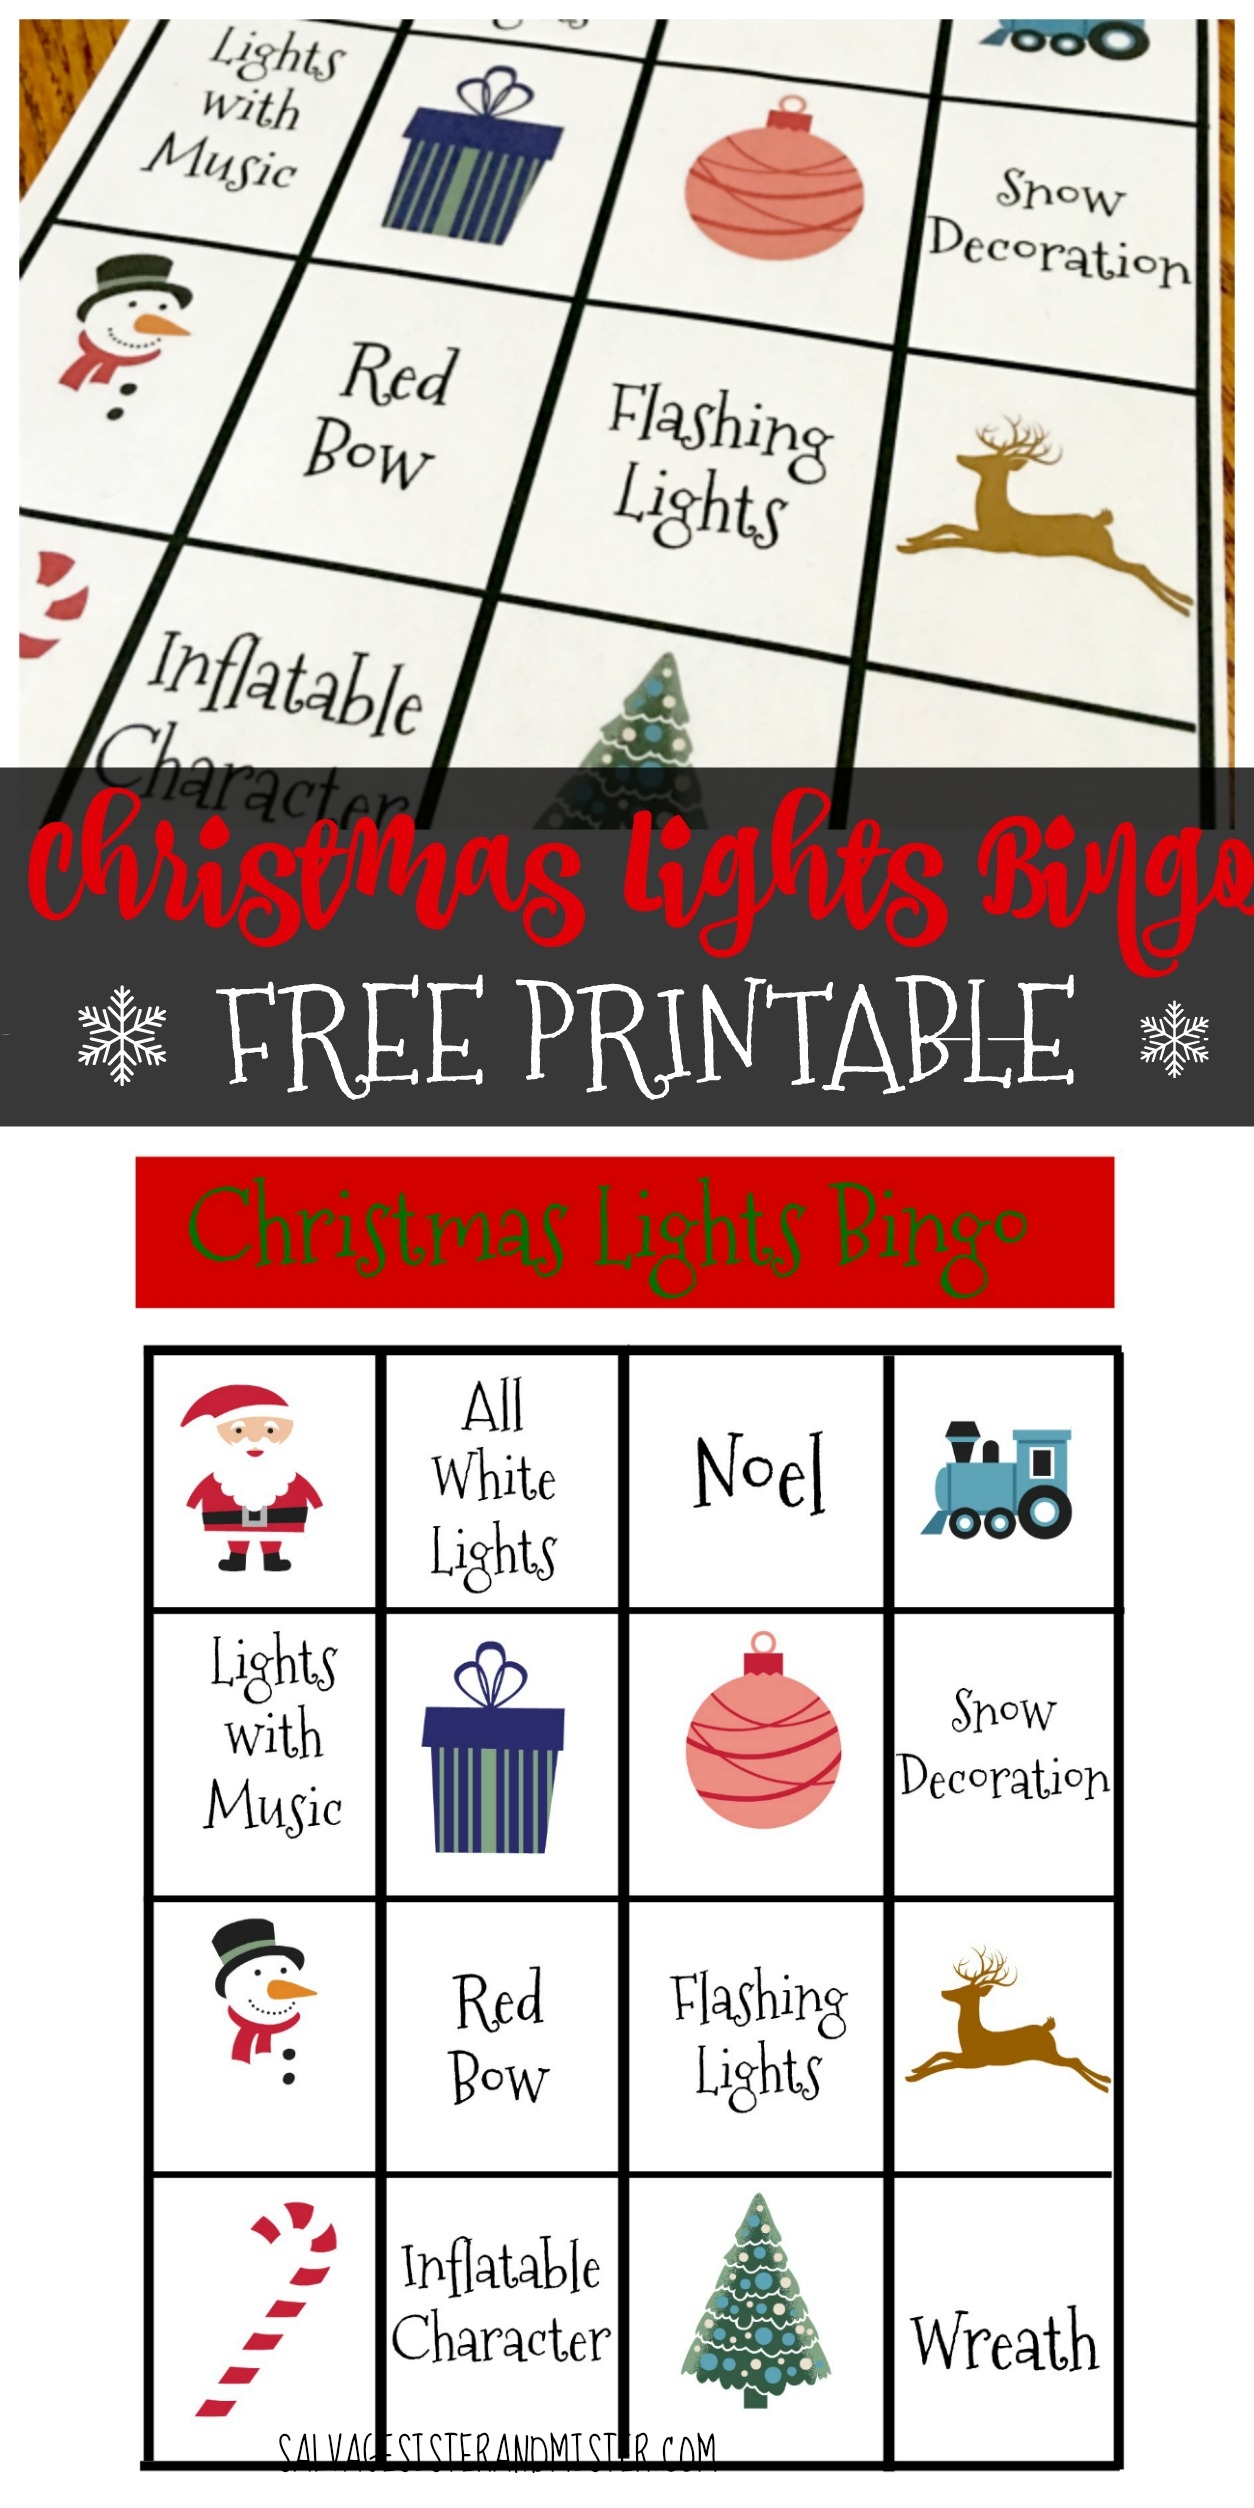 Christmas Light Bingo Free Printable